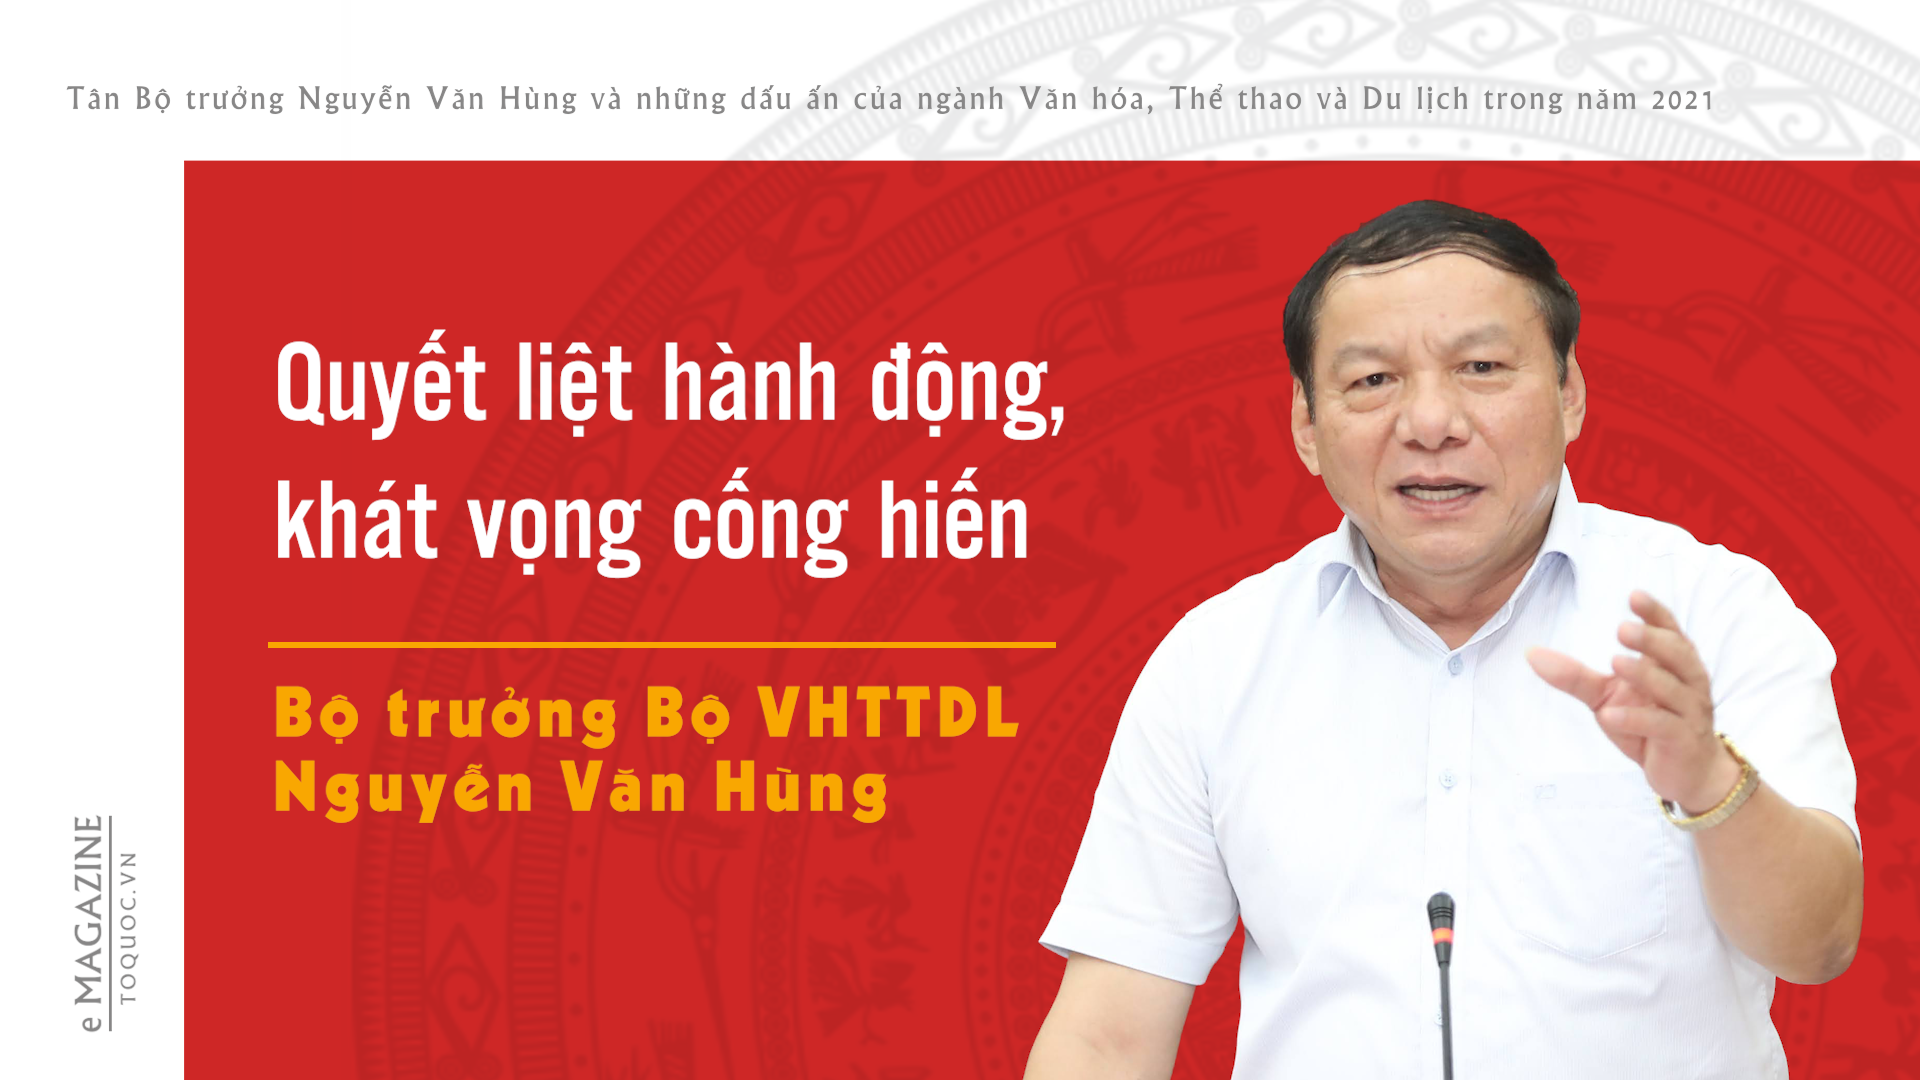 Tân Bộ trưởng Nguyễn Văn Hùng và những dấu ấn của ngành Văn hóa, Thể thao và Du lịch trong năm 2021